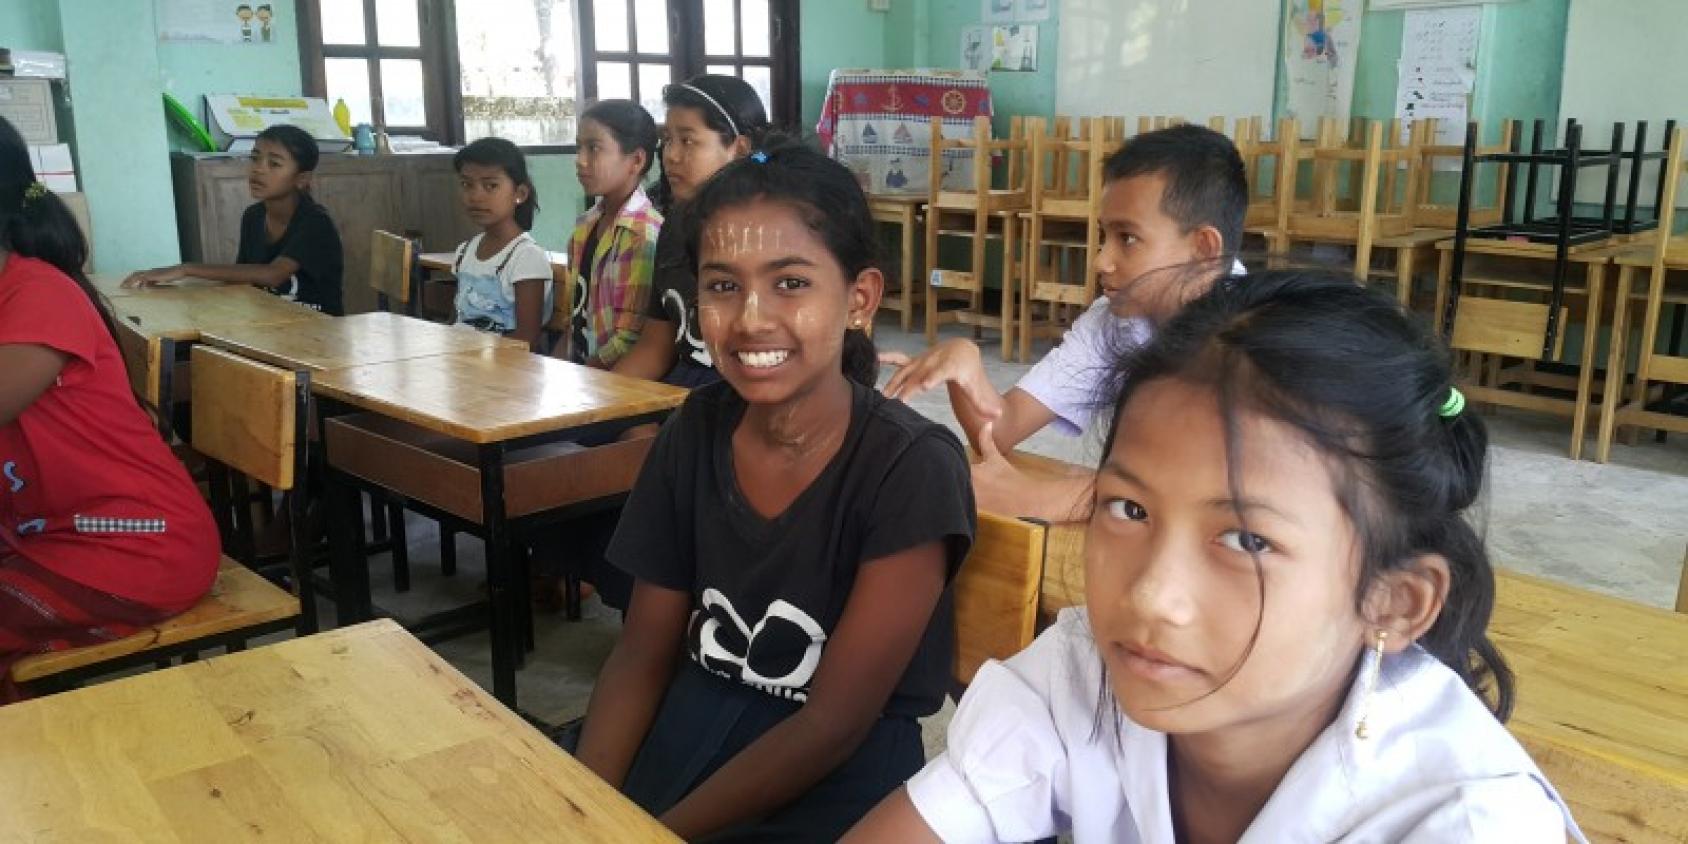 الفتيات يبتسمن للكاميرا في الصف.